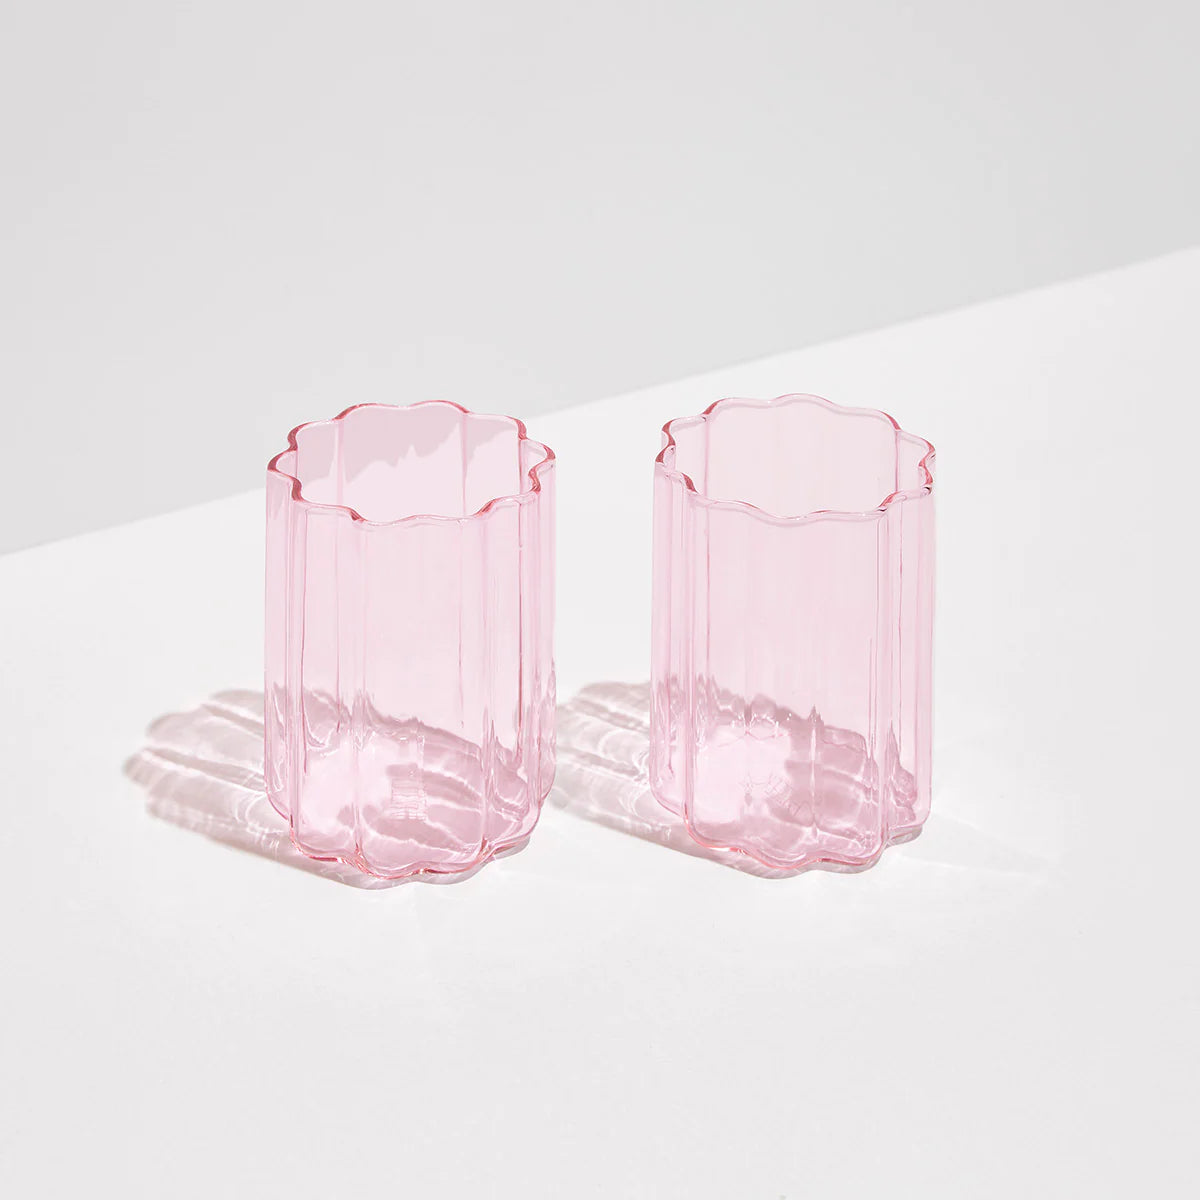 Fazeek Wave Glass Set in Pink (Set of 2)